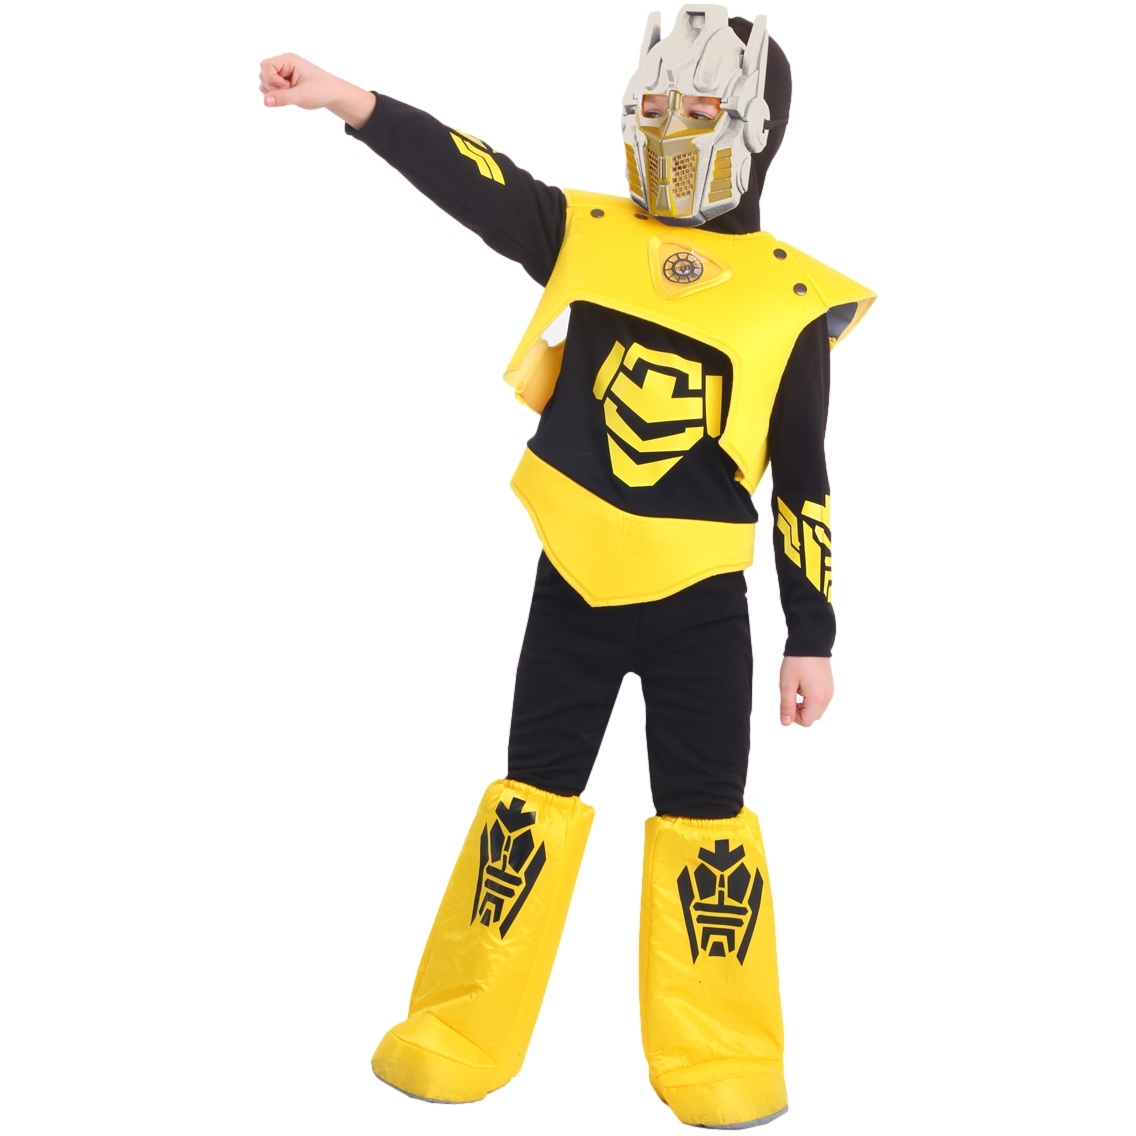 Карнавальный костюм "Робот" (рубашка с капюшоном,брюки,жилет,ботинки,маска) размер 110-56